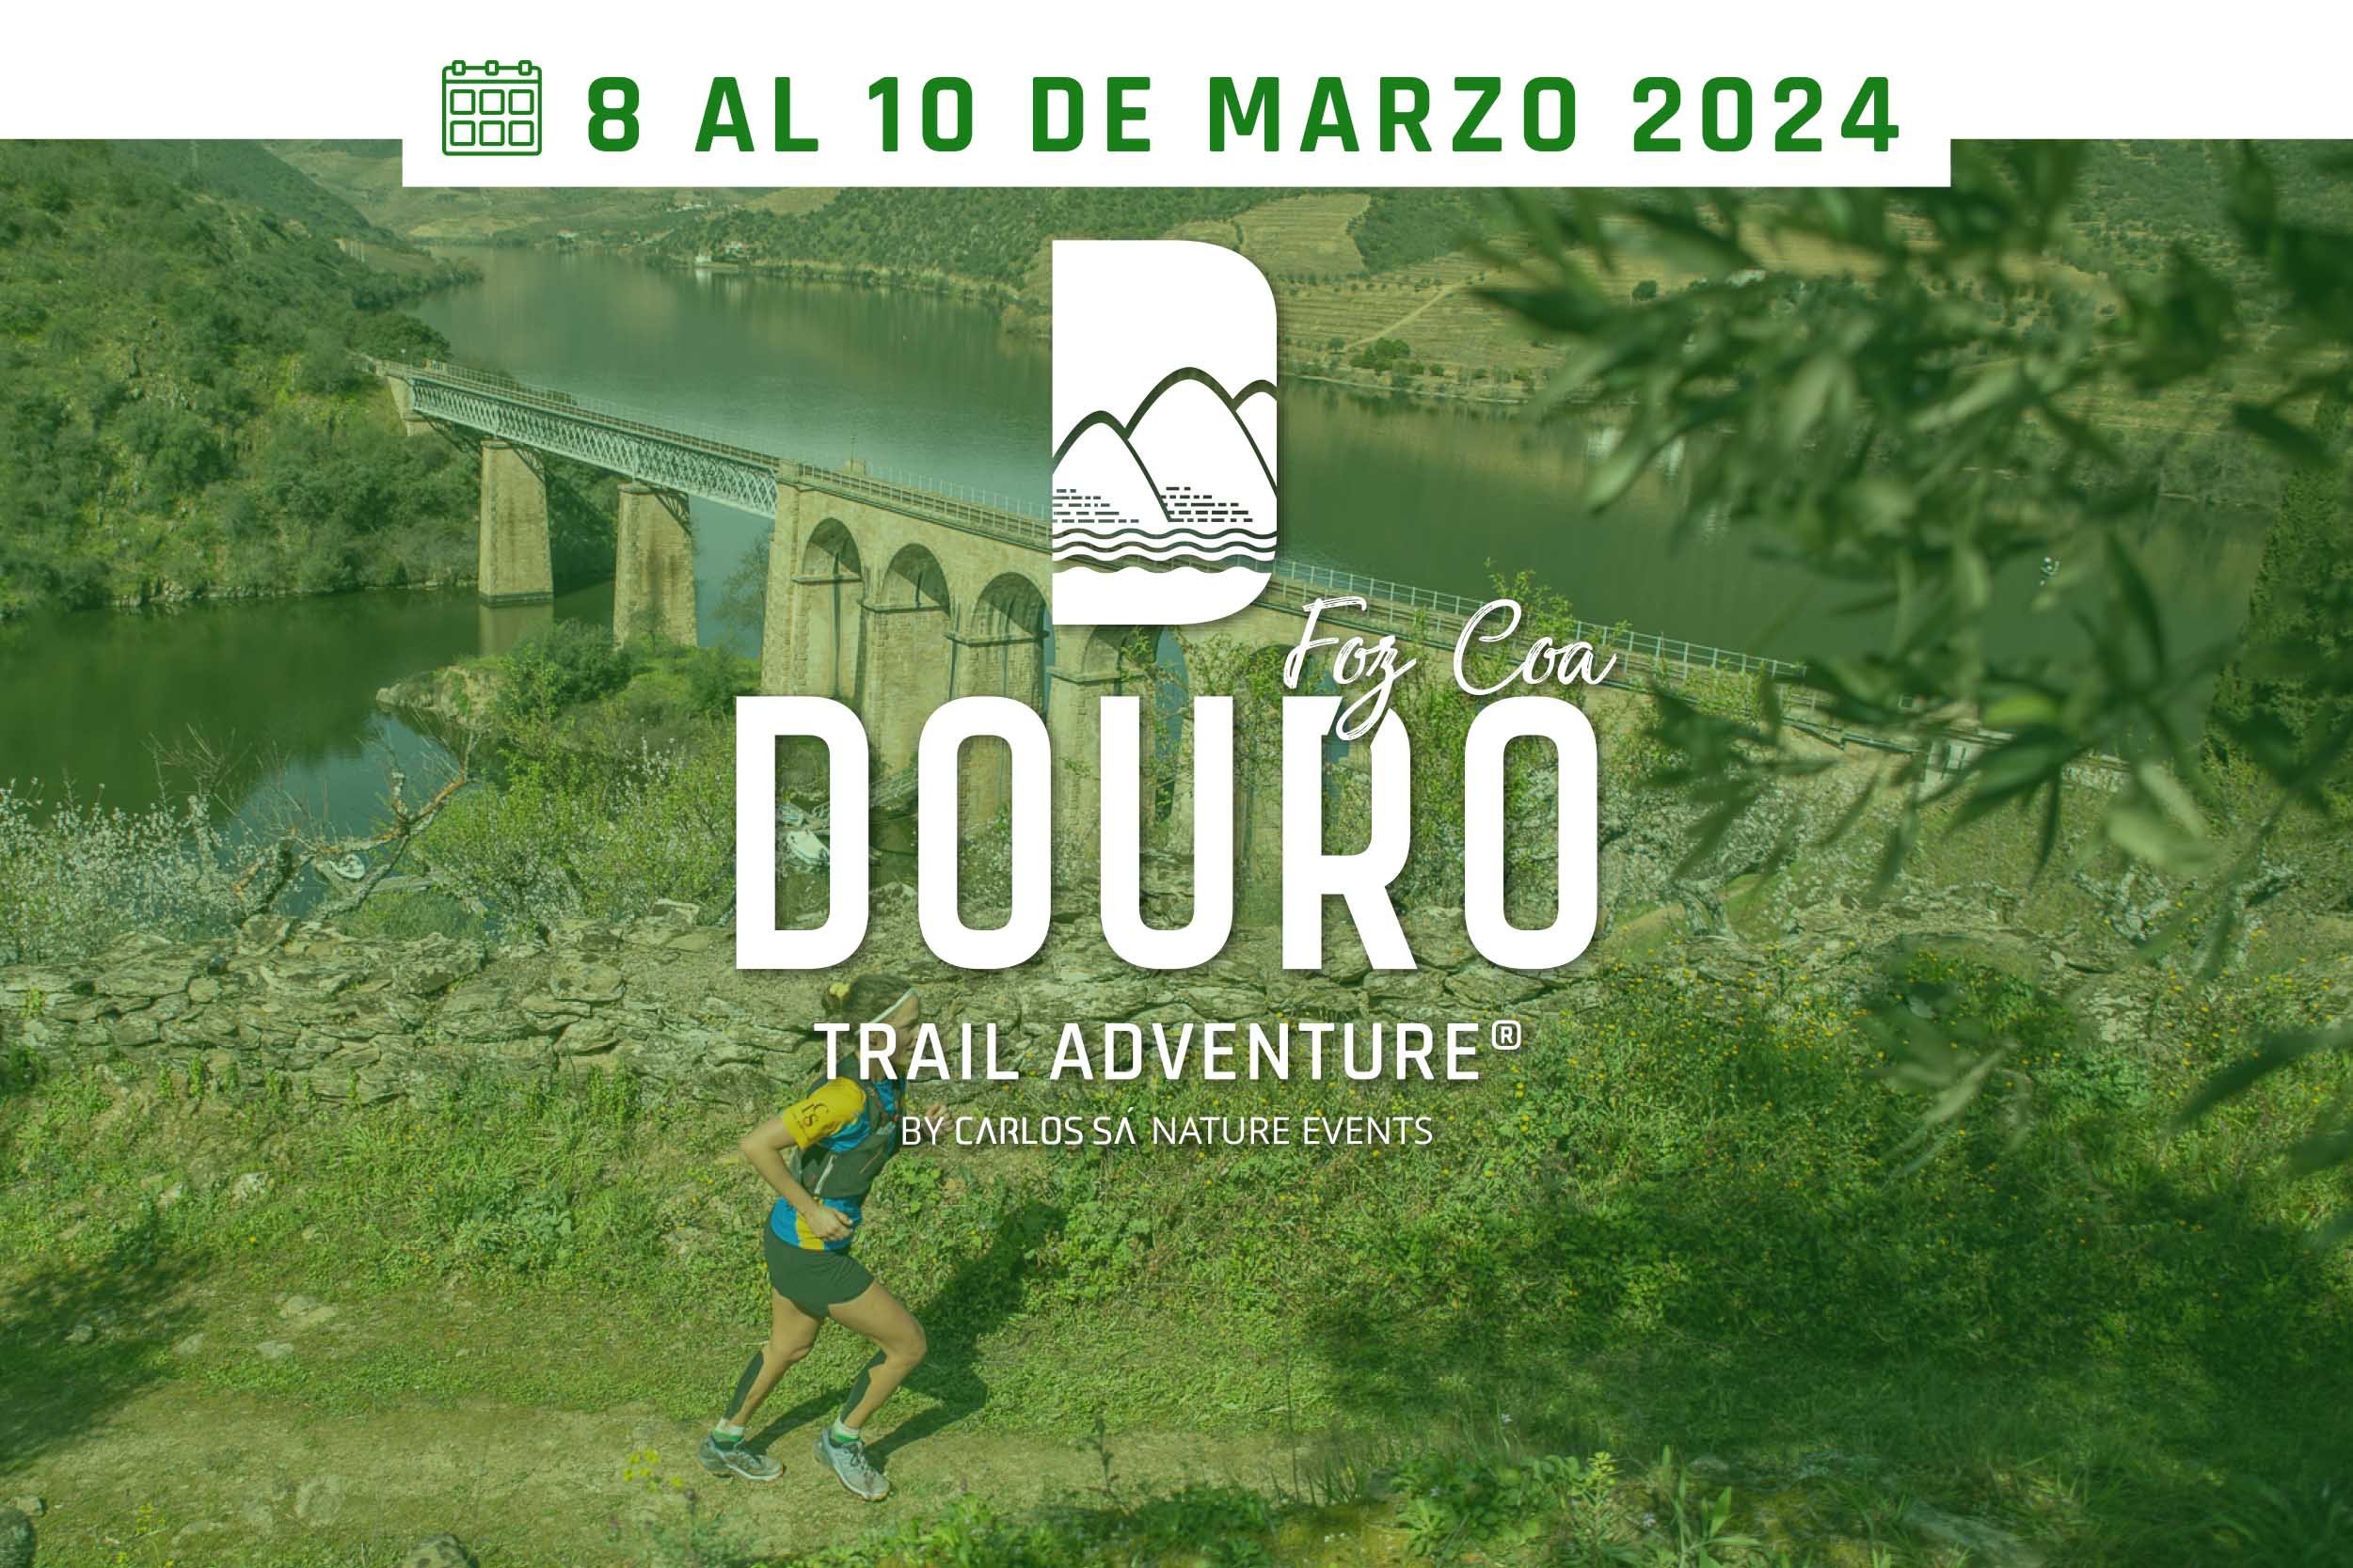 Douro Trail Adventure